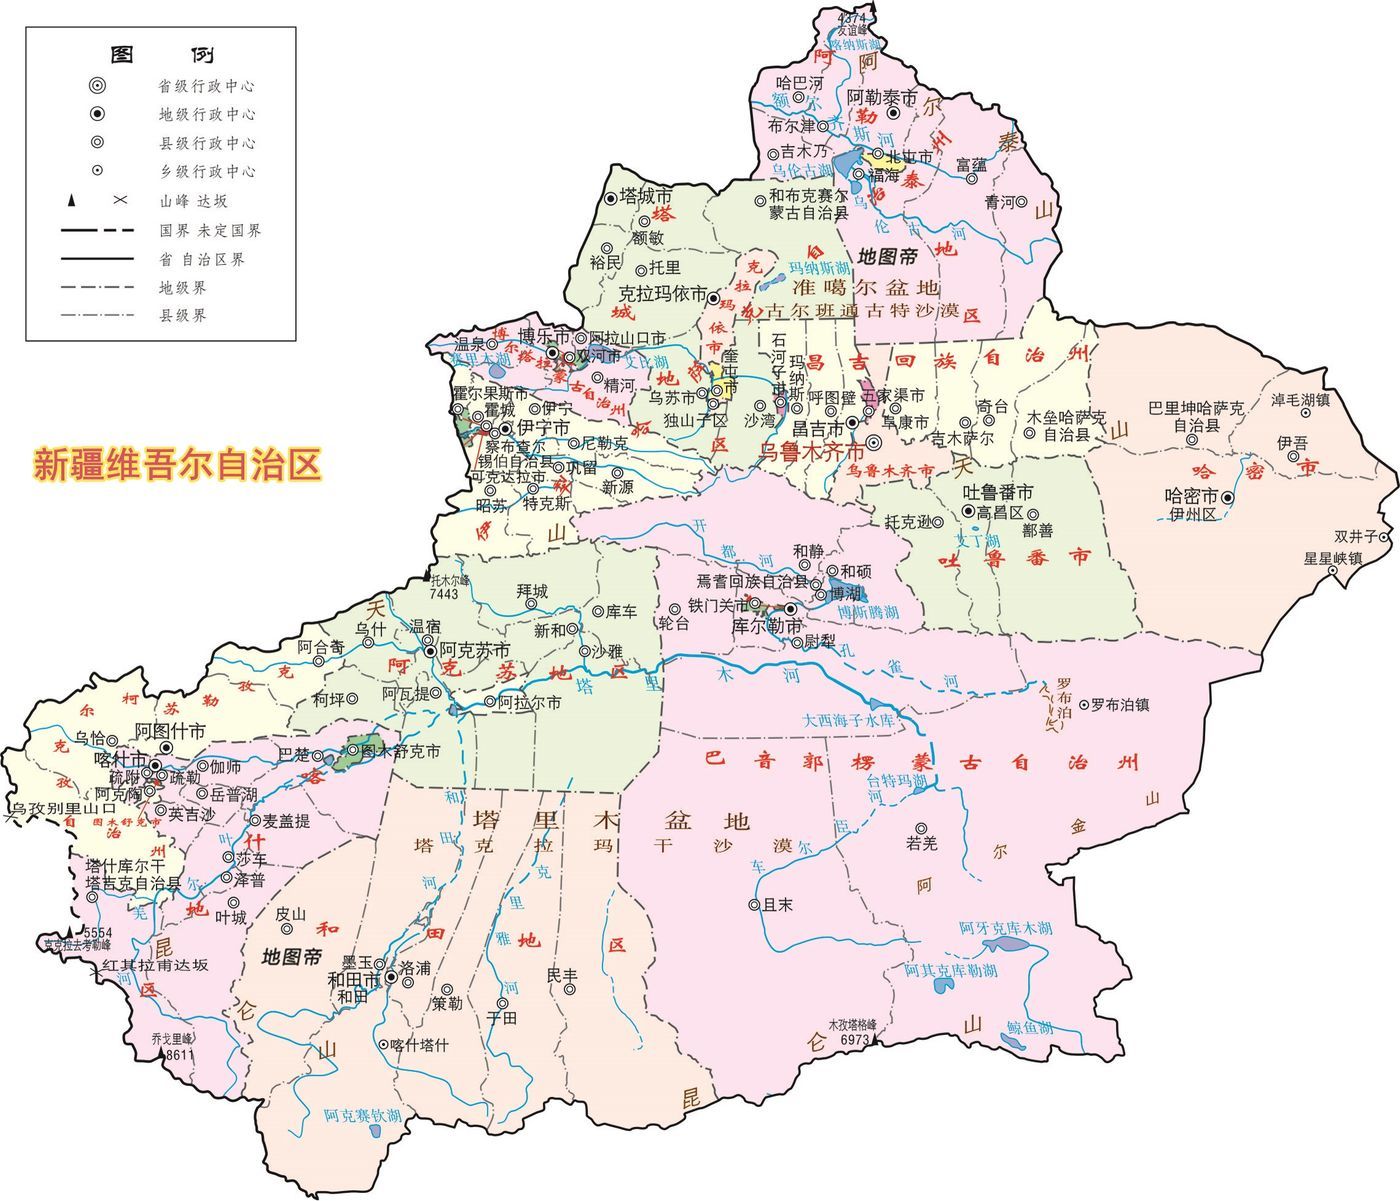 方舆 - 交通地理 - 西藏自治区“十三五”及中长期铁路发展规划 - Powered by phpwind